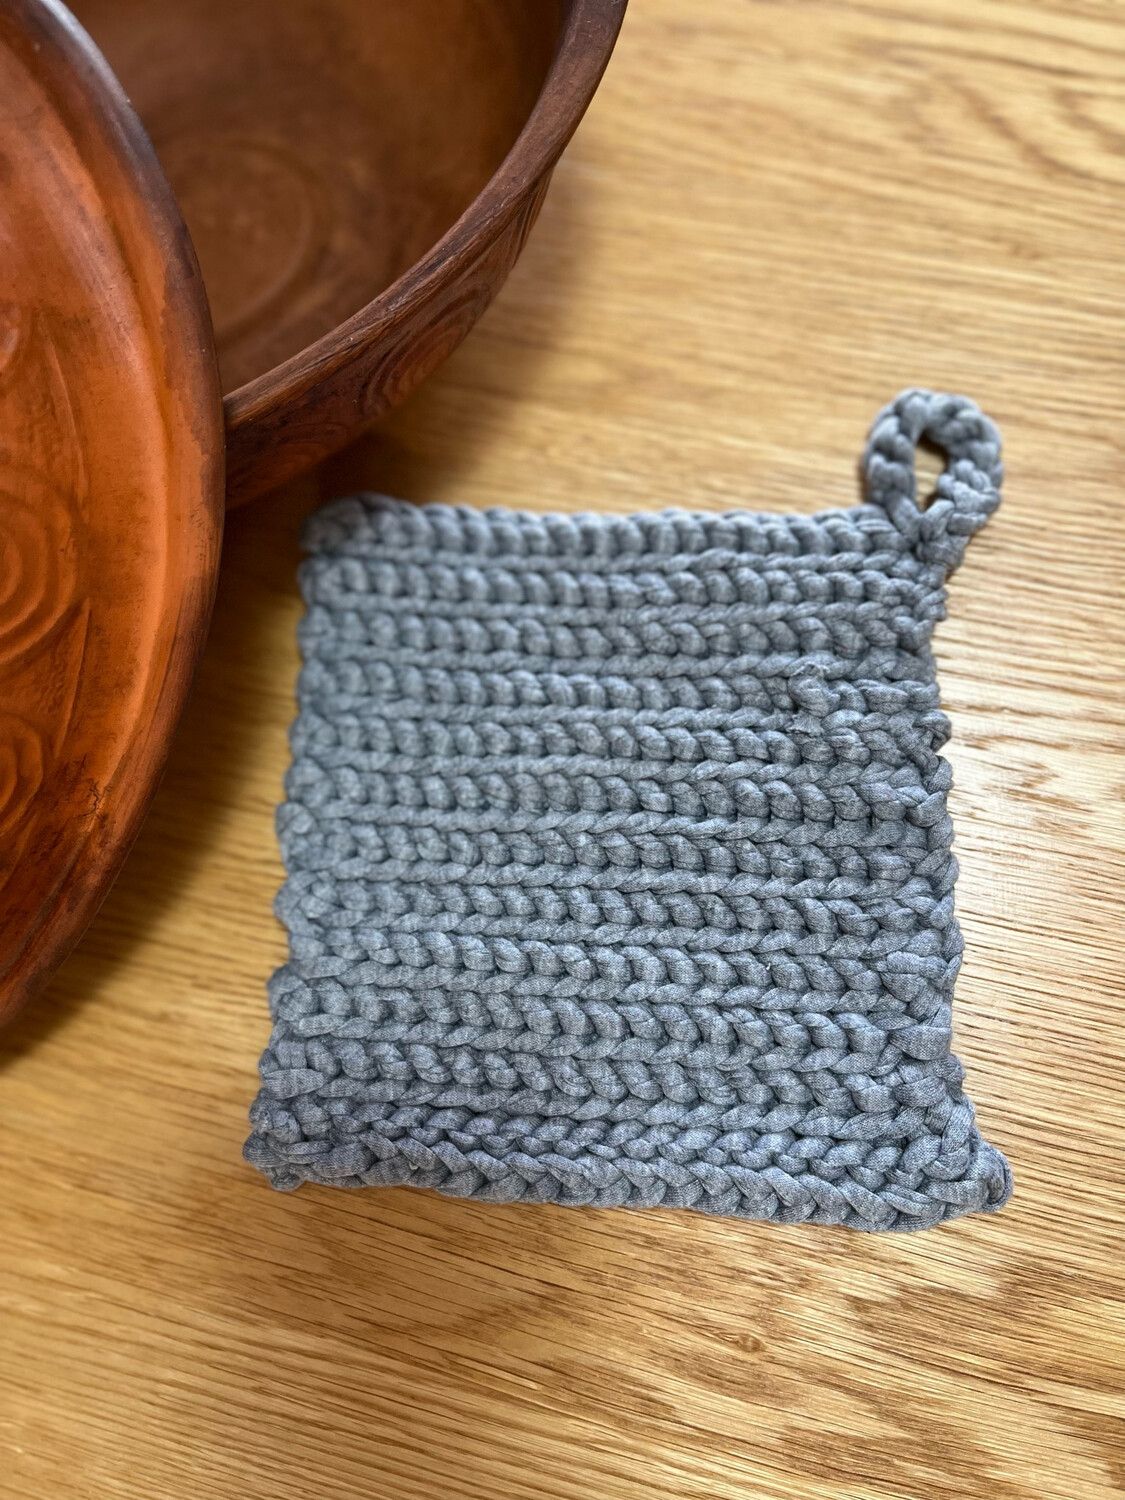 Crochet Pot Mitt - By Ben